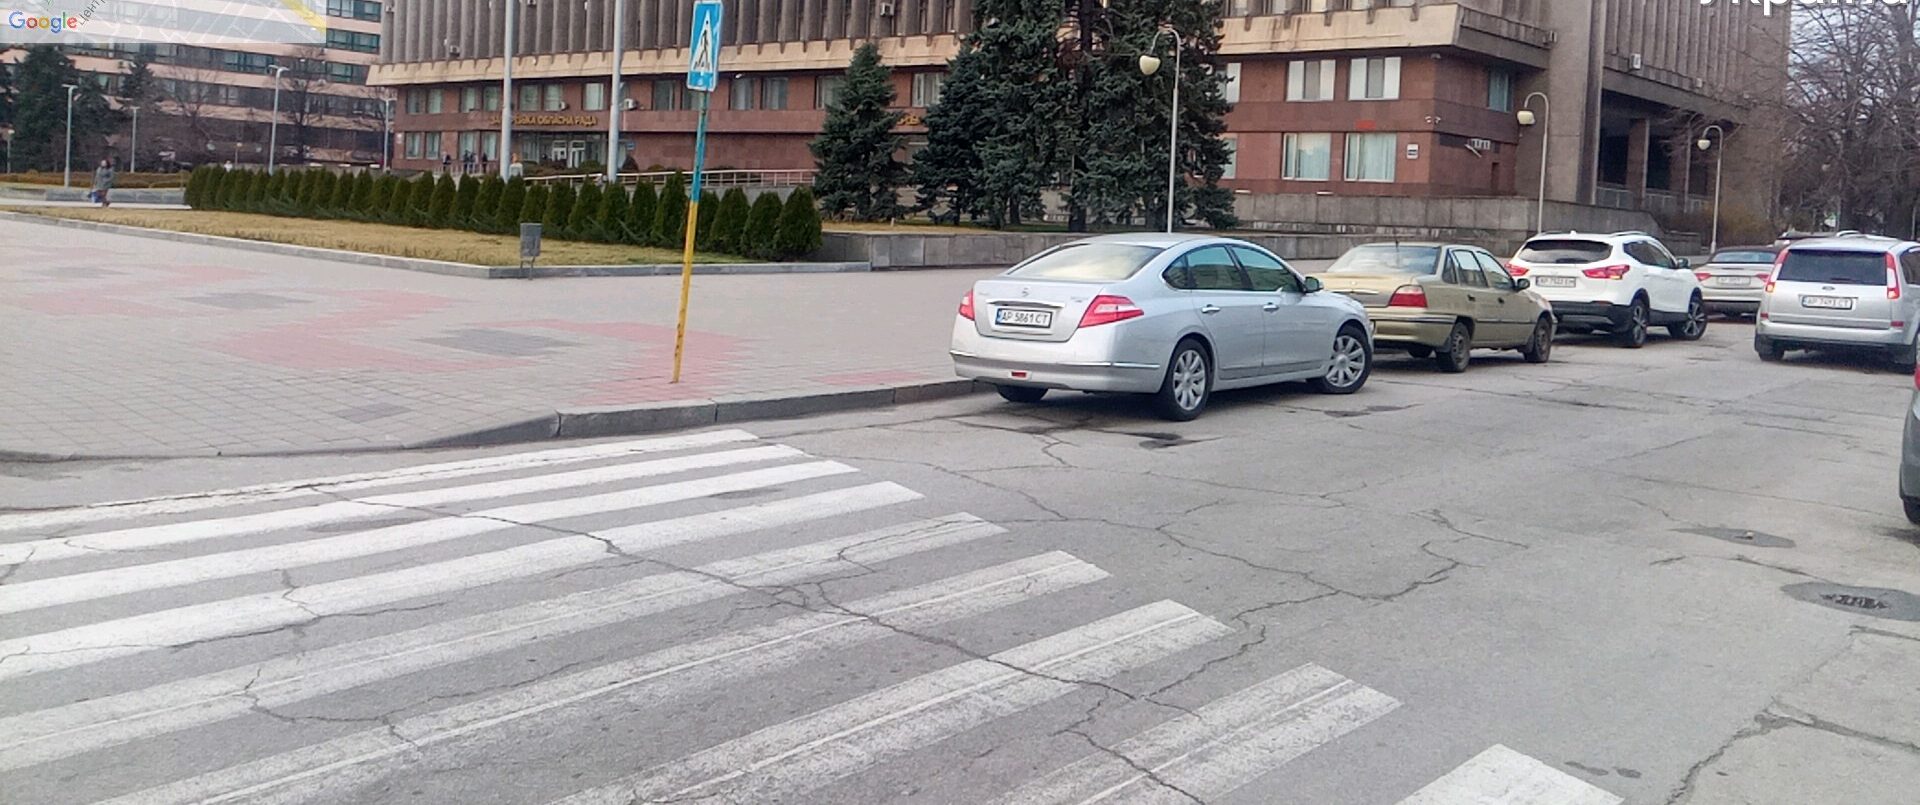 Полиция собрала штафов на 5 млн гривен за неправильную парковку в Запорожье